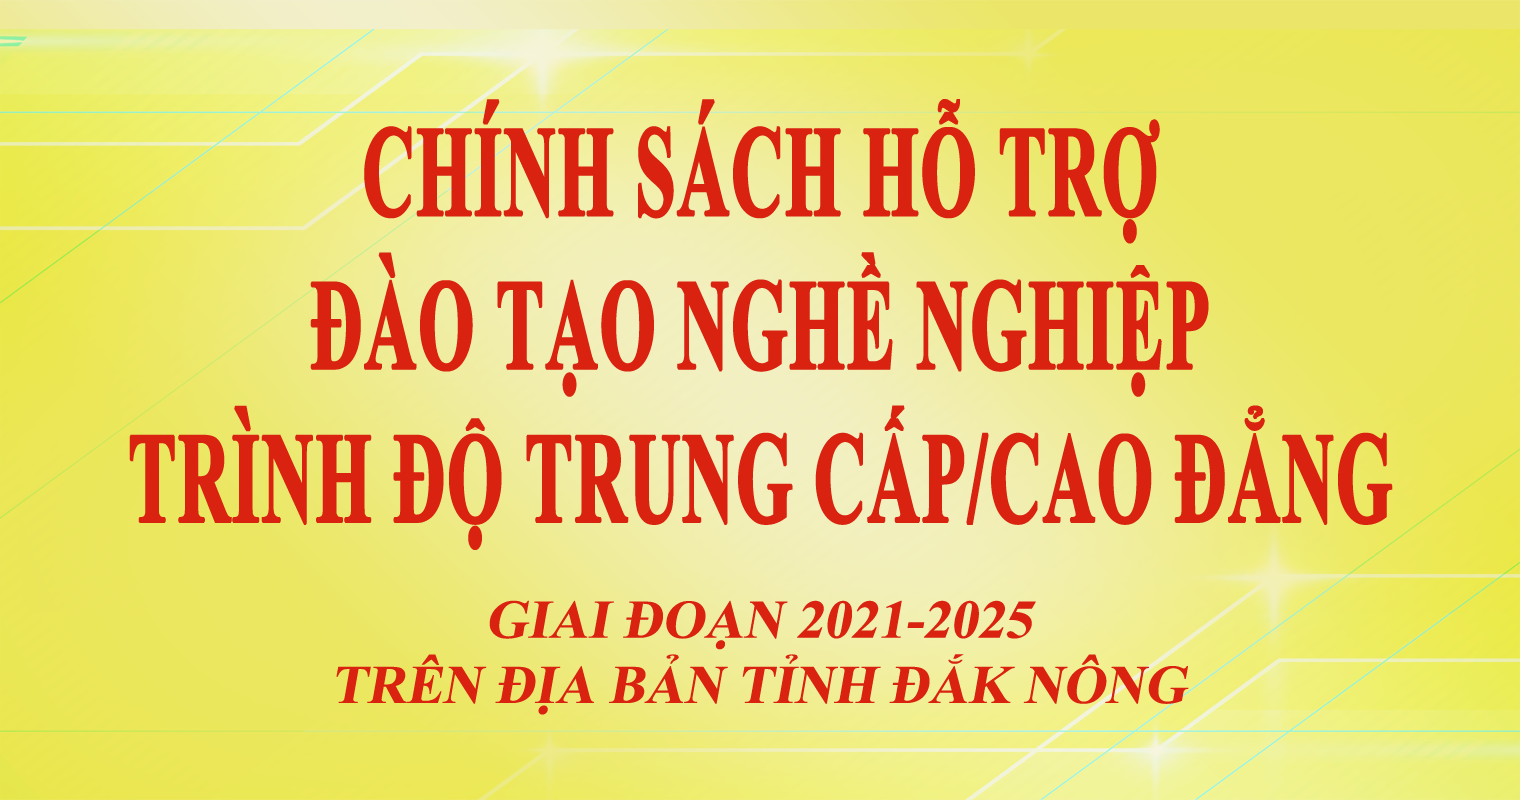 Ngày 28/10/2021, HĐND tỉnh Đắk Nông đã ra Nghị quyết số 12/2021/NQ-HĐND, quy định về chính sách hỗ trợ đào tạo nghề nghiệp trình độ trung cấp, cao đẳng trên địa bàn tỉnh Đắk Nông giai đoạn 2021 - 2025.